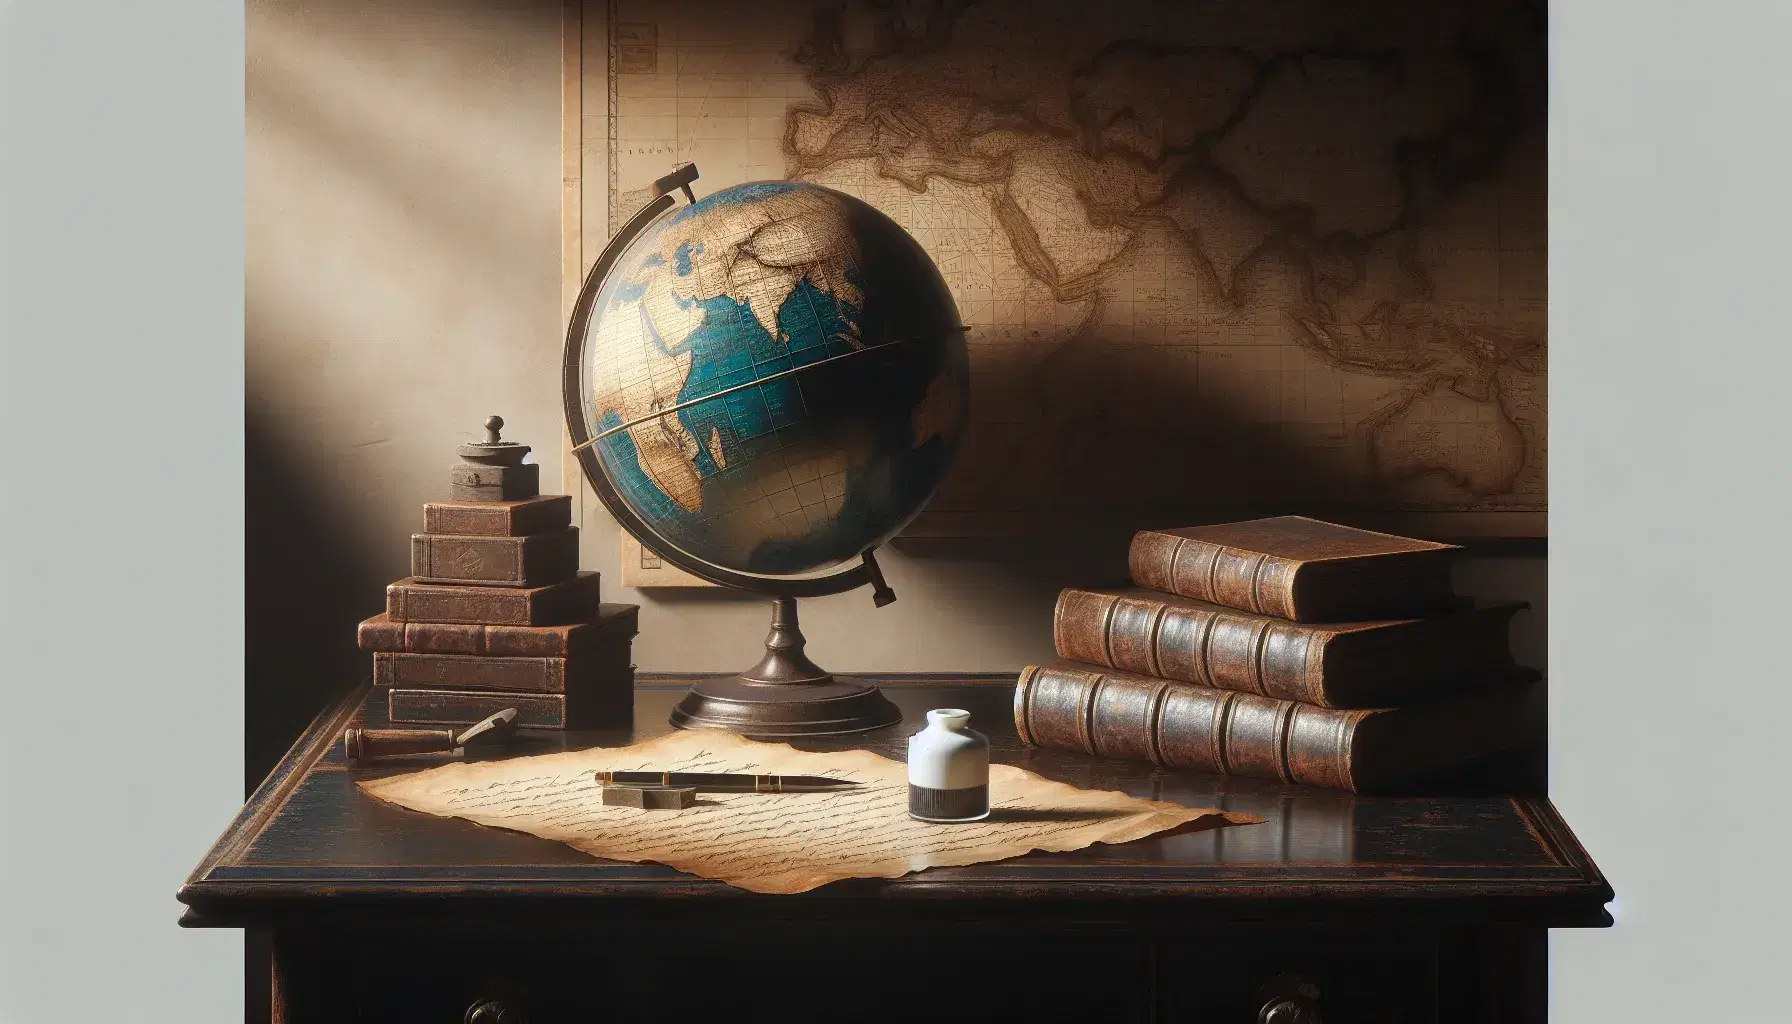 Scrivania antica in legno scuro con globo vintage, libri in pelle marrone, calamaio in ceramica e foglio ingiallito, sullo sfondo una mappa antica.